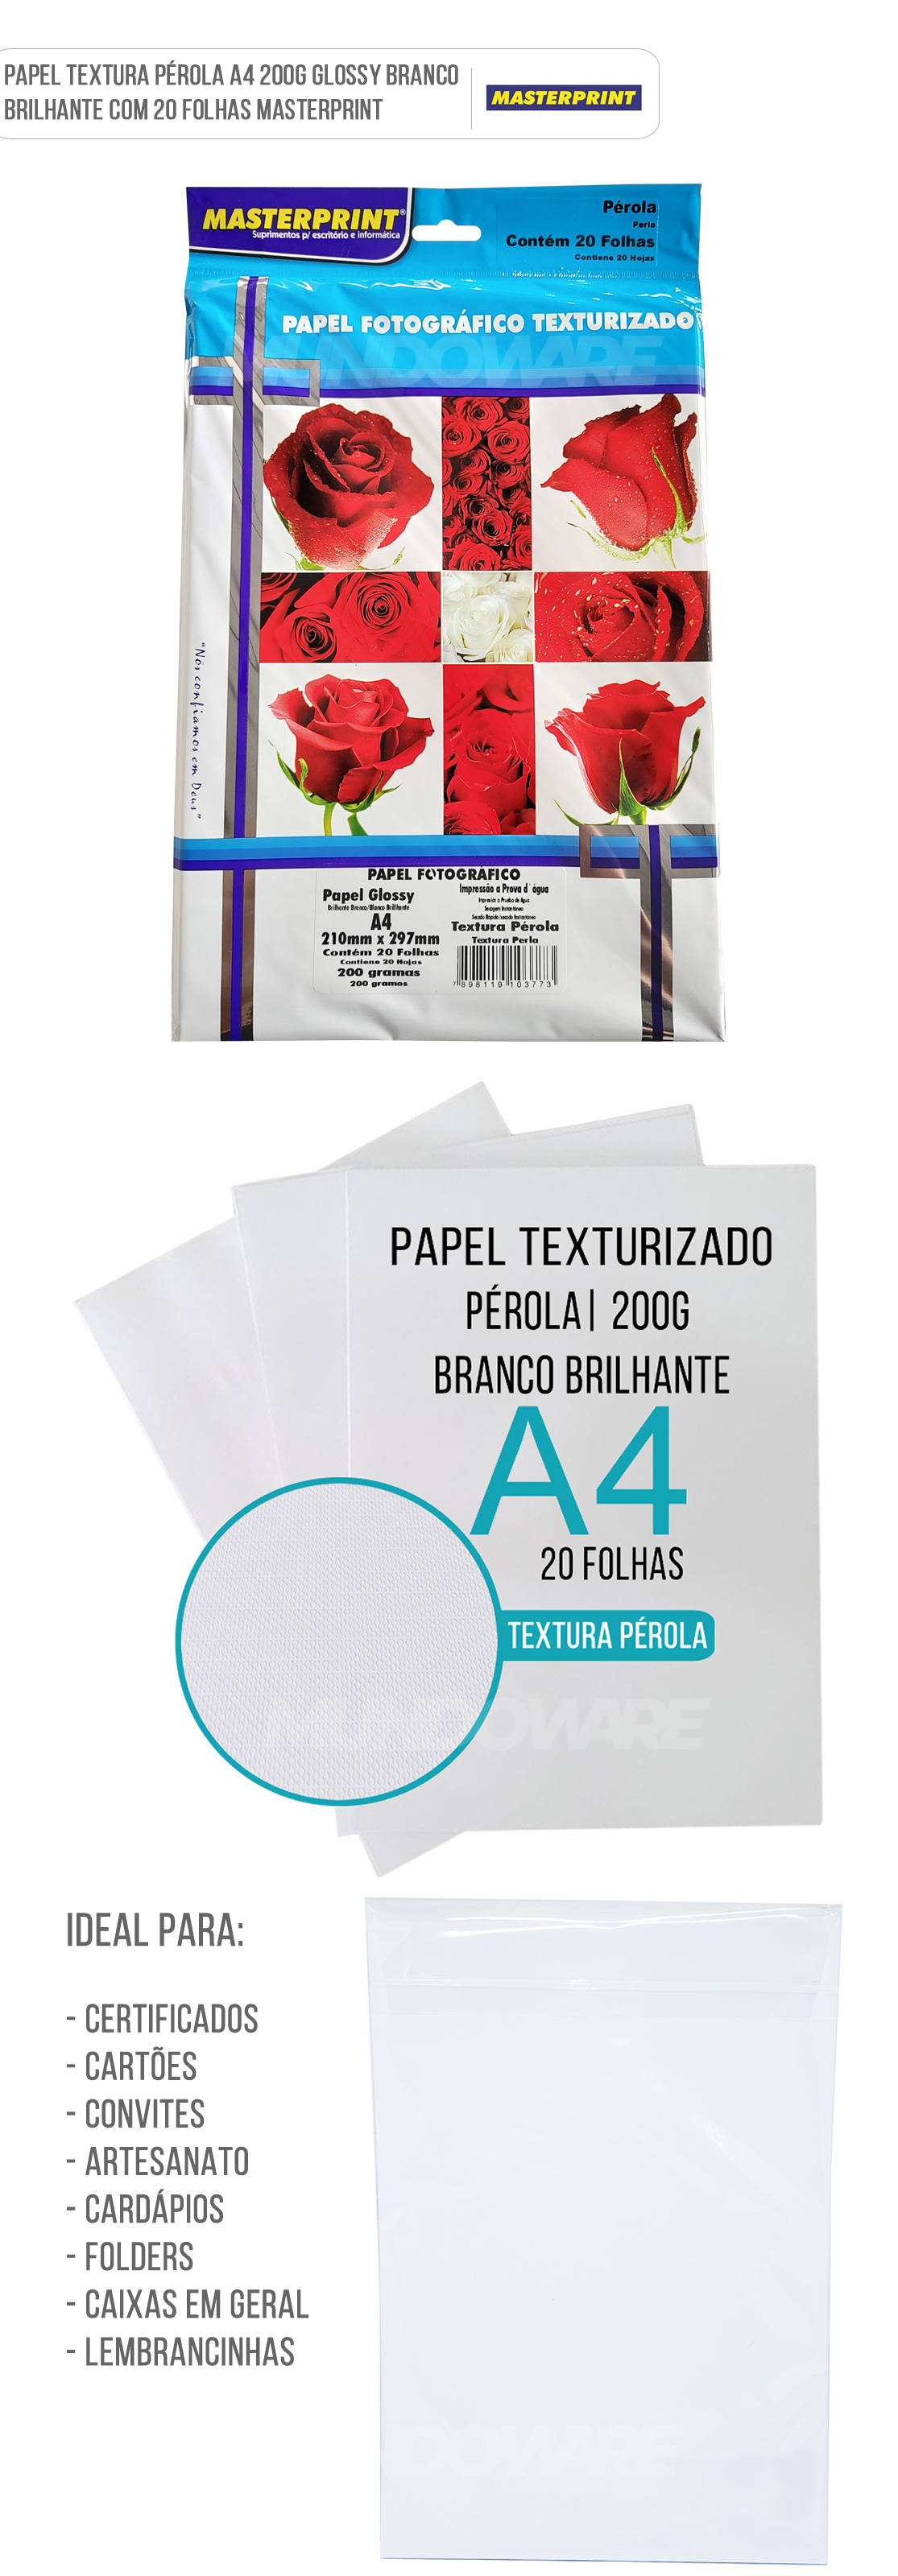 Papel Texturizado Prola 200g A4 Glossy Branco Brilhante com 20 folhas